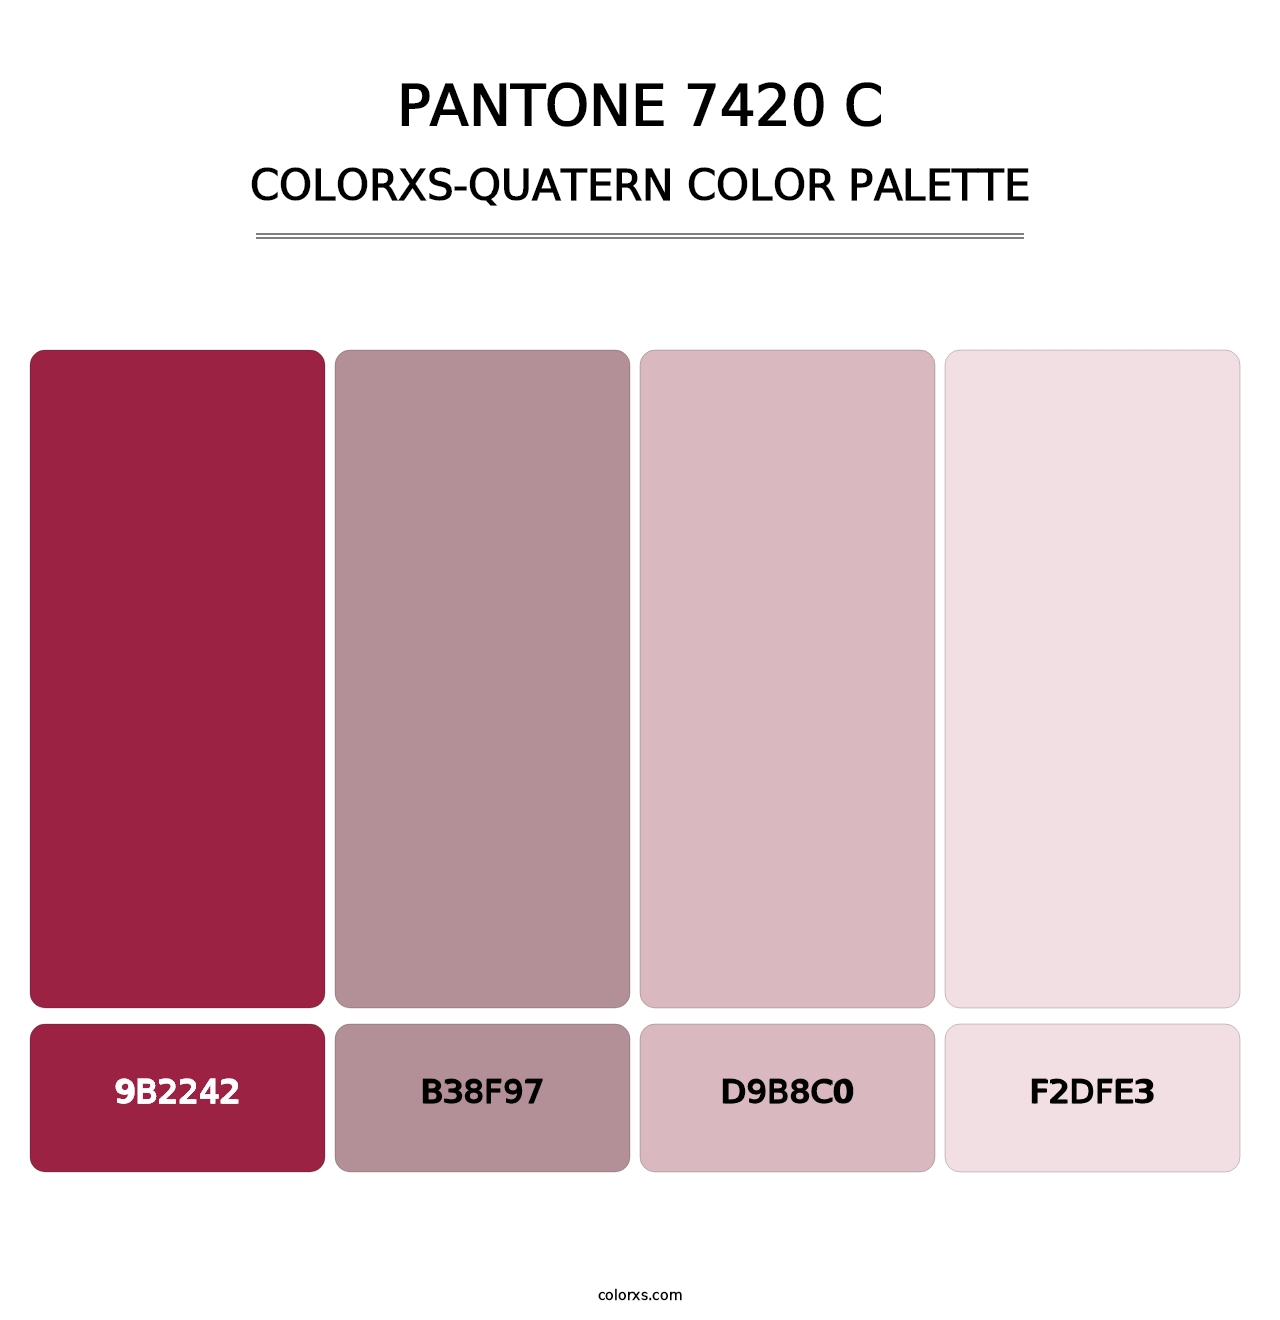 PANTONE 7420 C - Colorxs Quatern Palette